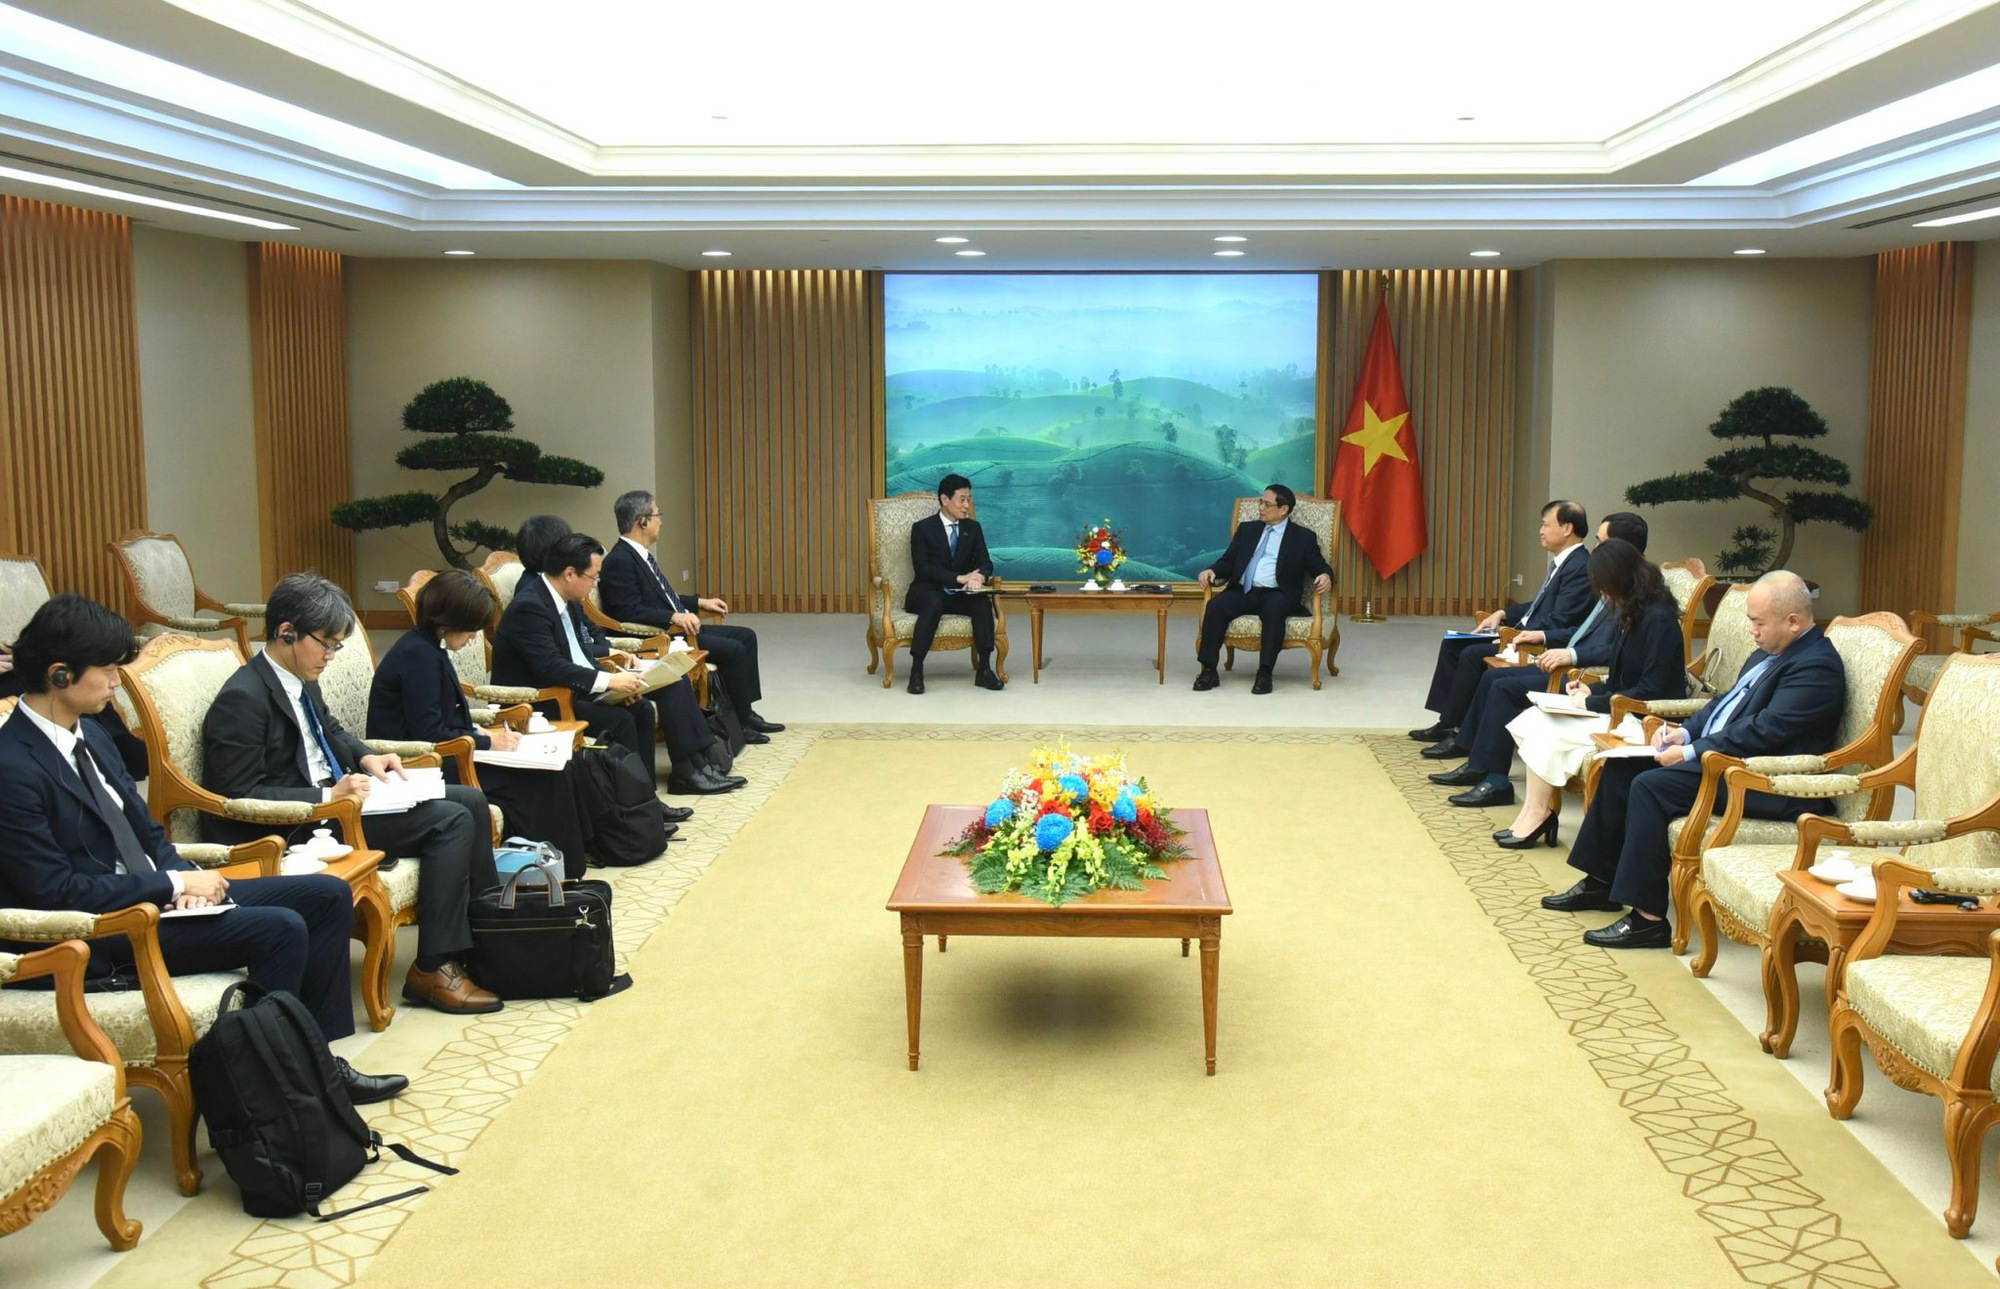 Thủ tướng khẳng định, Việt Nam khuyến khích và tạo điều kiện thuận lợi cho các doanh nghiệp Nhật Bản có nhu cầu đến đầu tư, hợp tác tại Việt Nam - Ảnh: VGP/Nhật Bắc